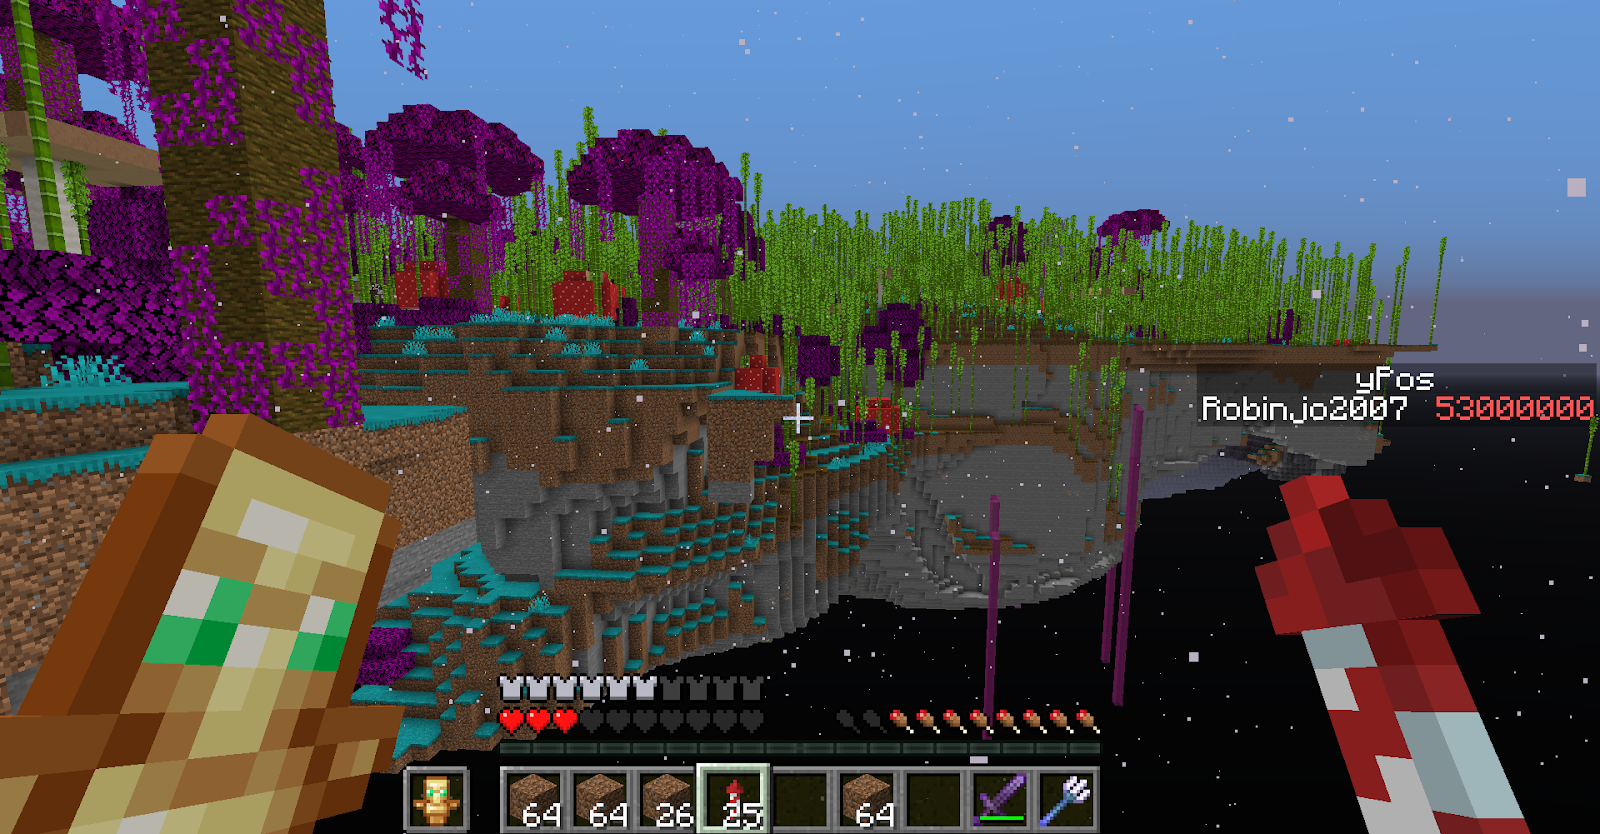 Nog een screenshot van het Mushroom Forest